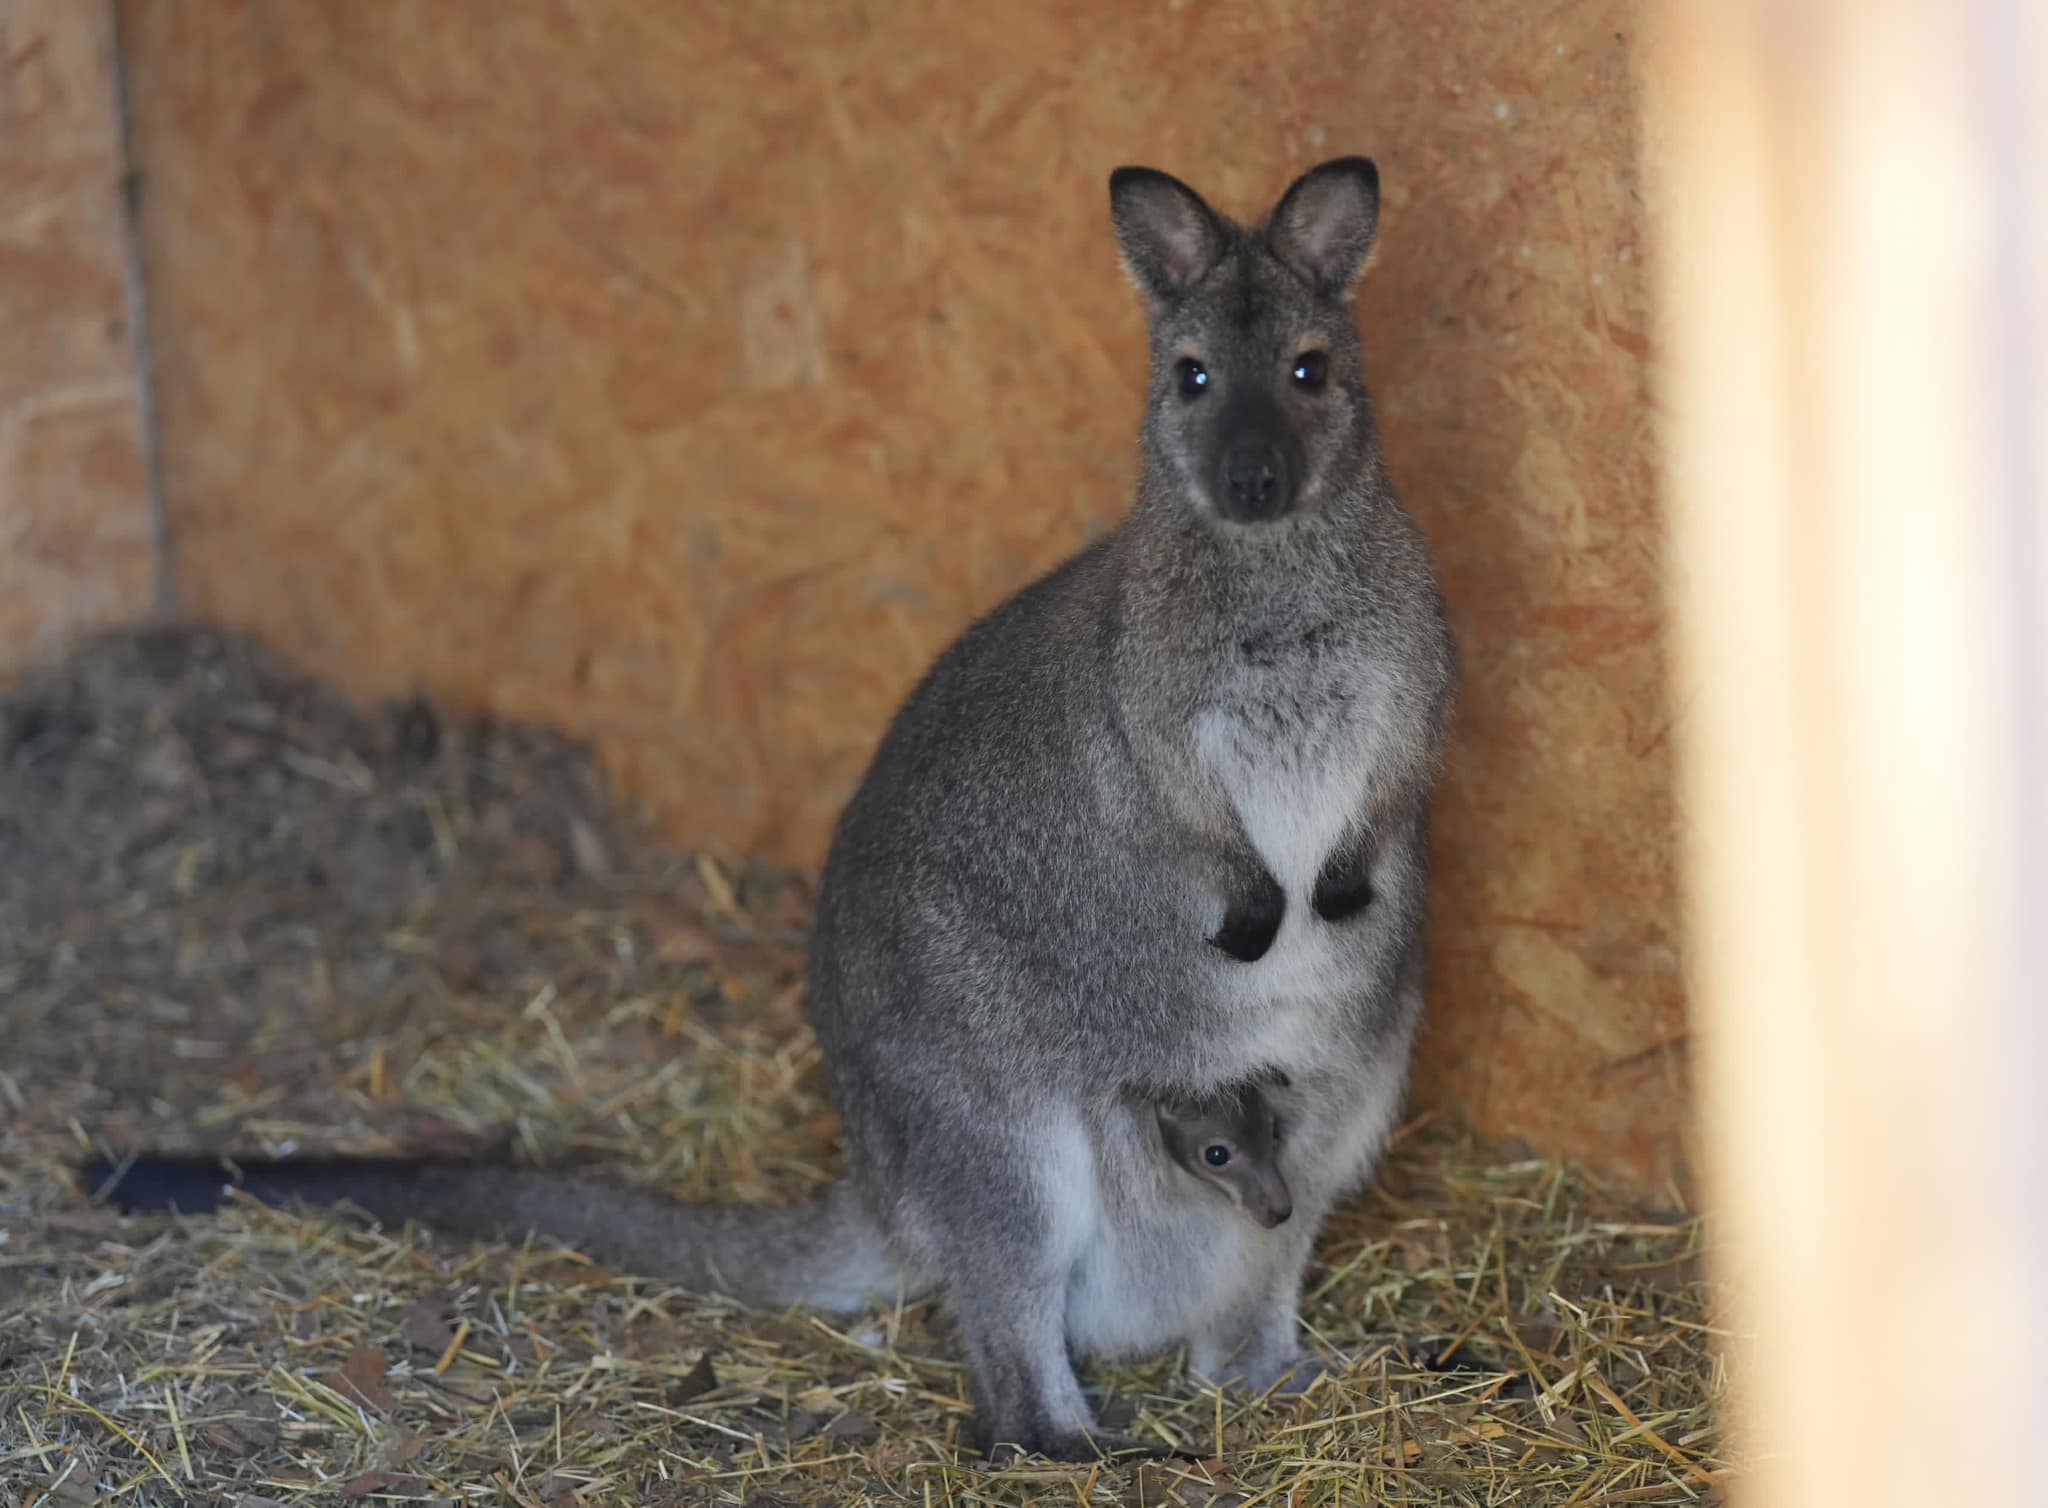 Southern Romania: Dwarf kangaroo born in Craiova Zoo